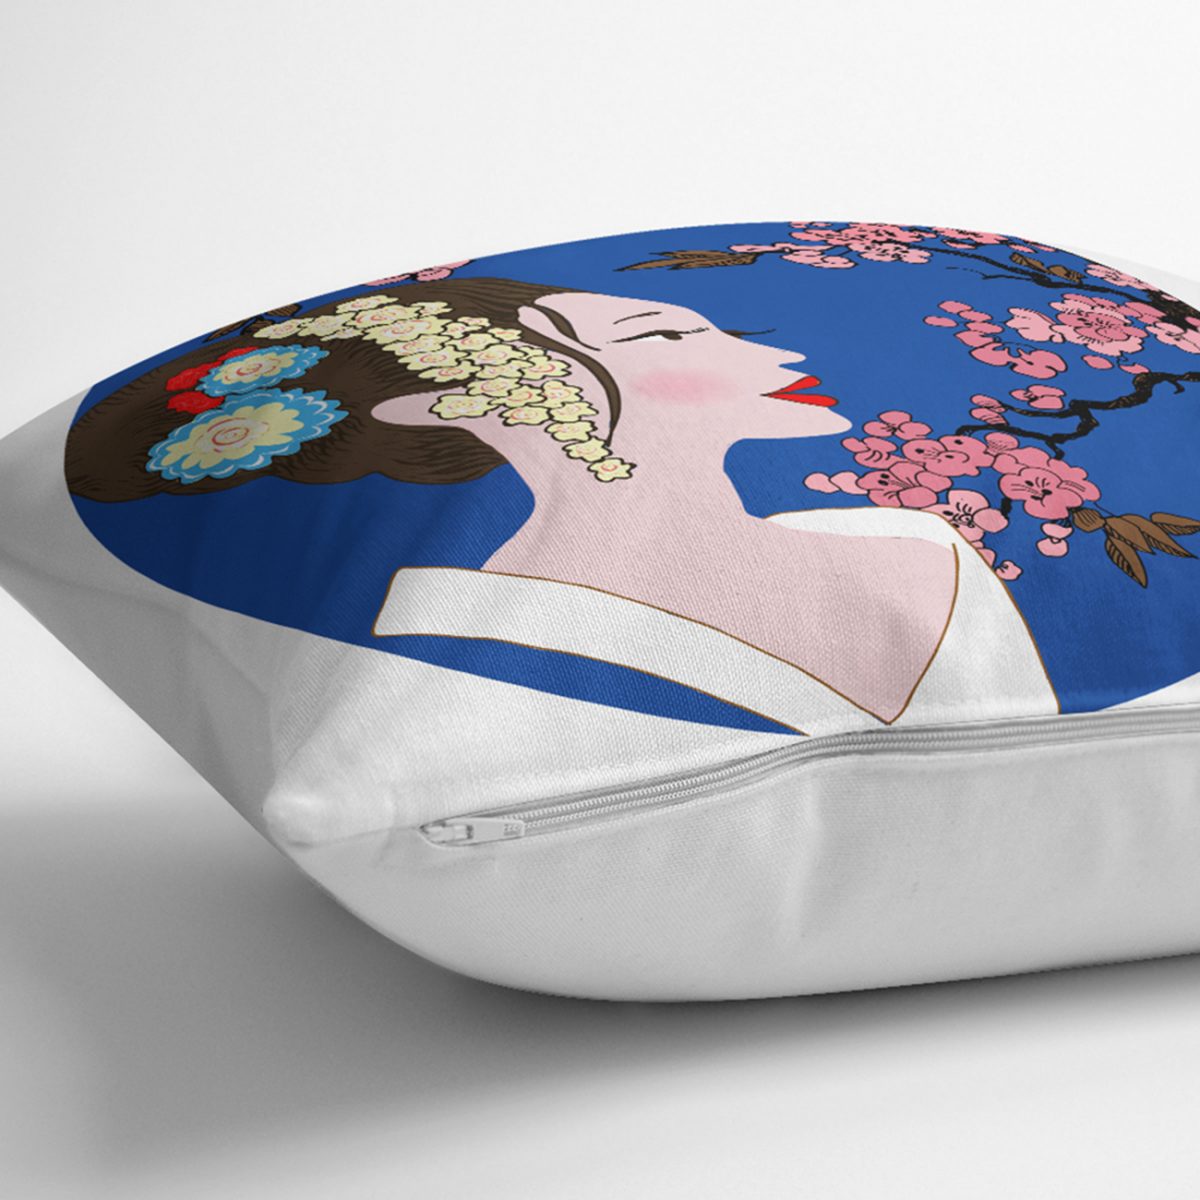 Çiçek Motifli Japon Kız Desenli Dekoratif Yastık Kılıfı Realhomes